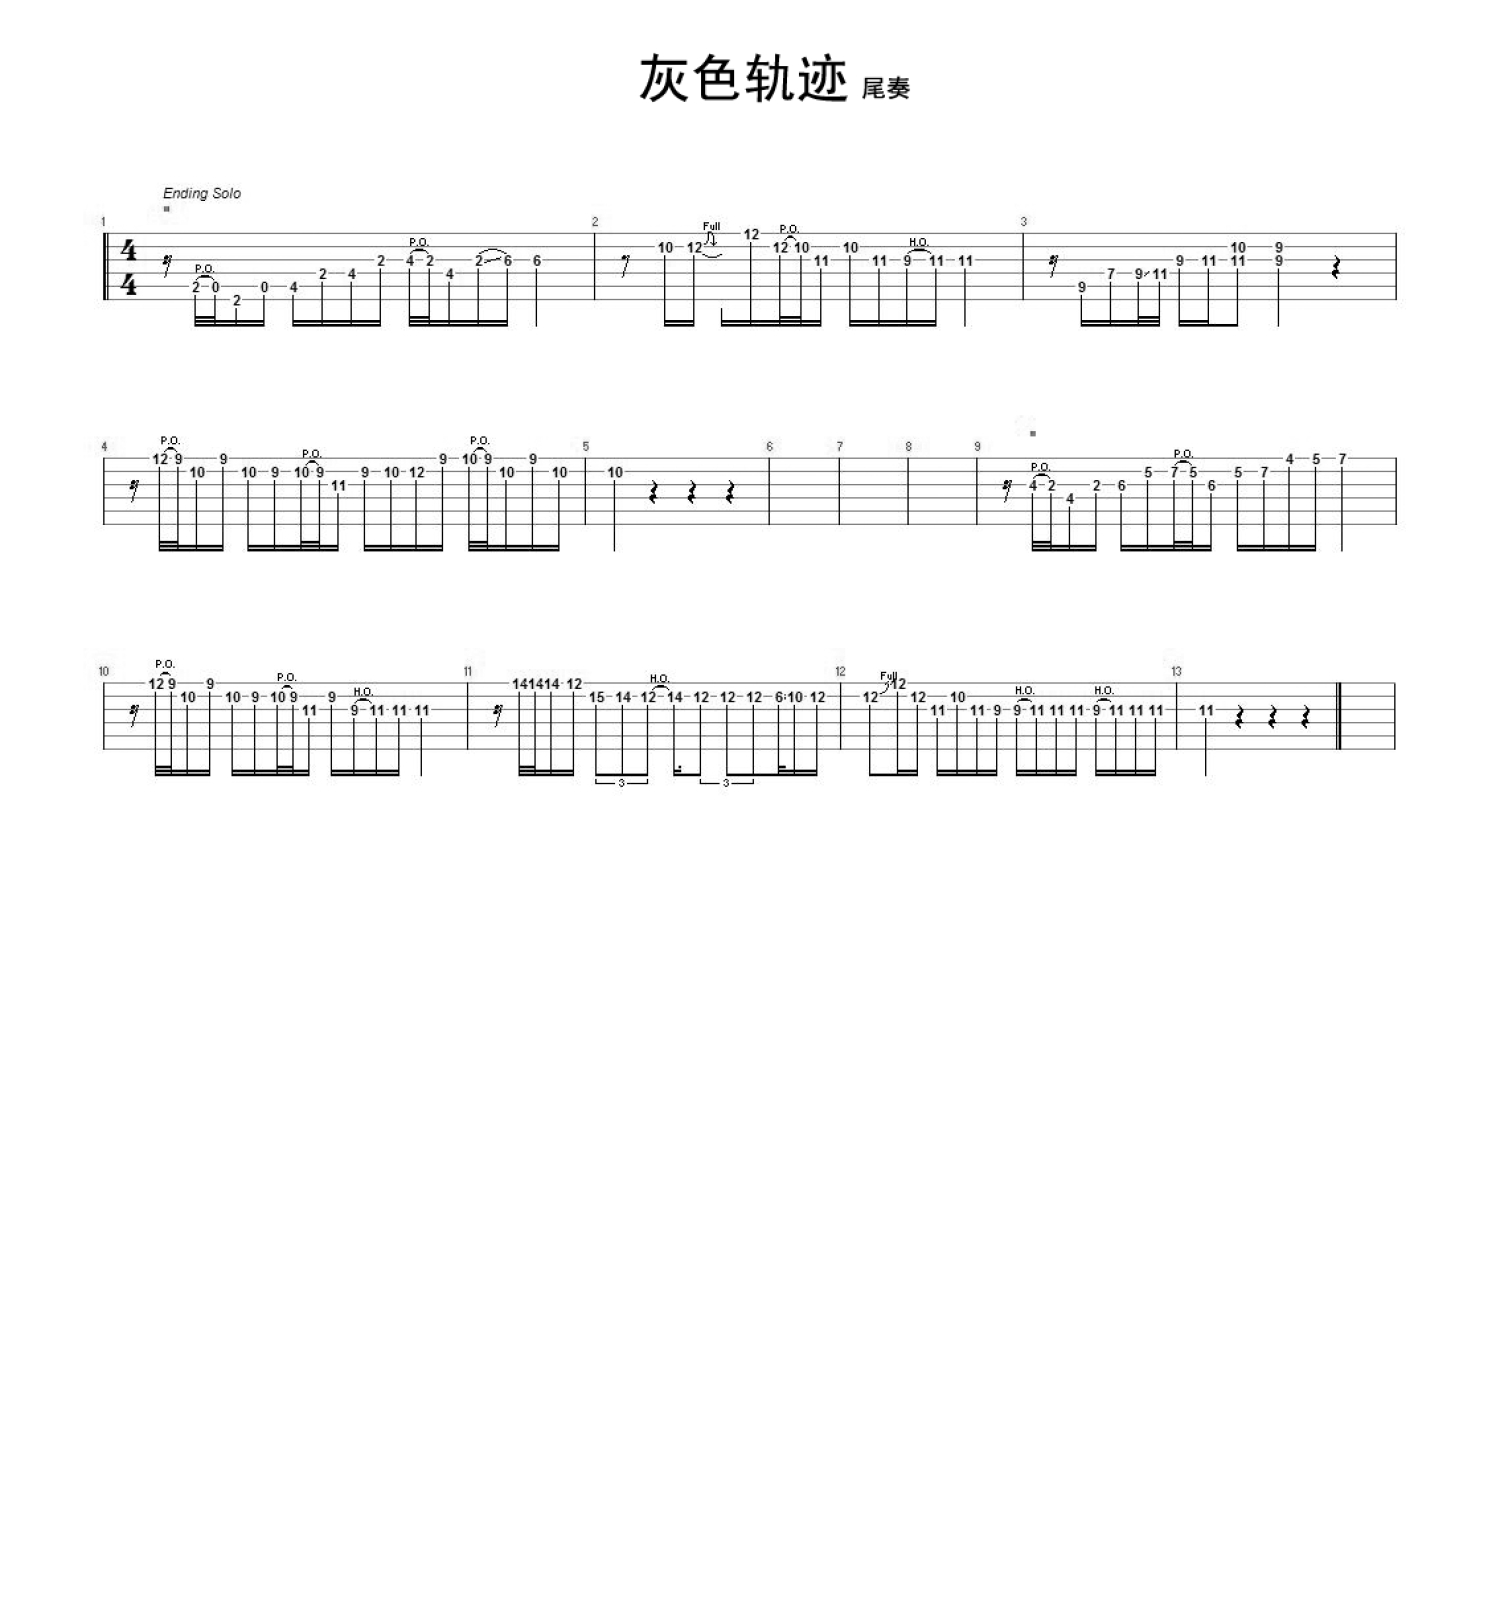 情人-Beyond五线谱预览2-钢琴谱文件（五线谱、双手简谱、数字谱、Midi、PDF）免费下载